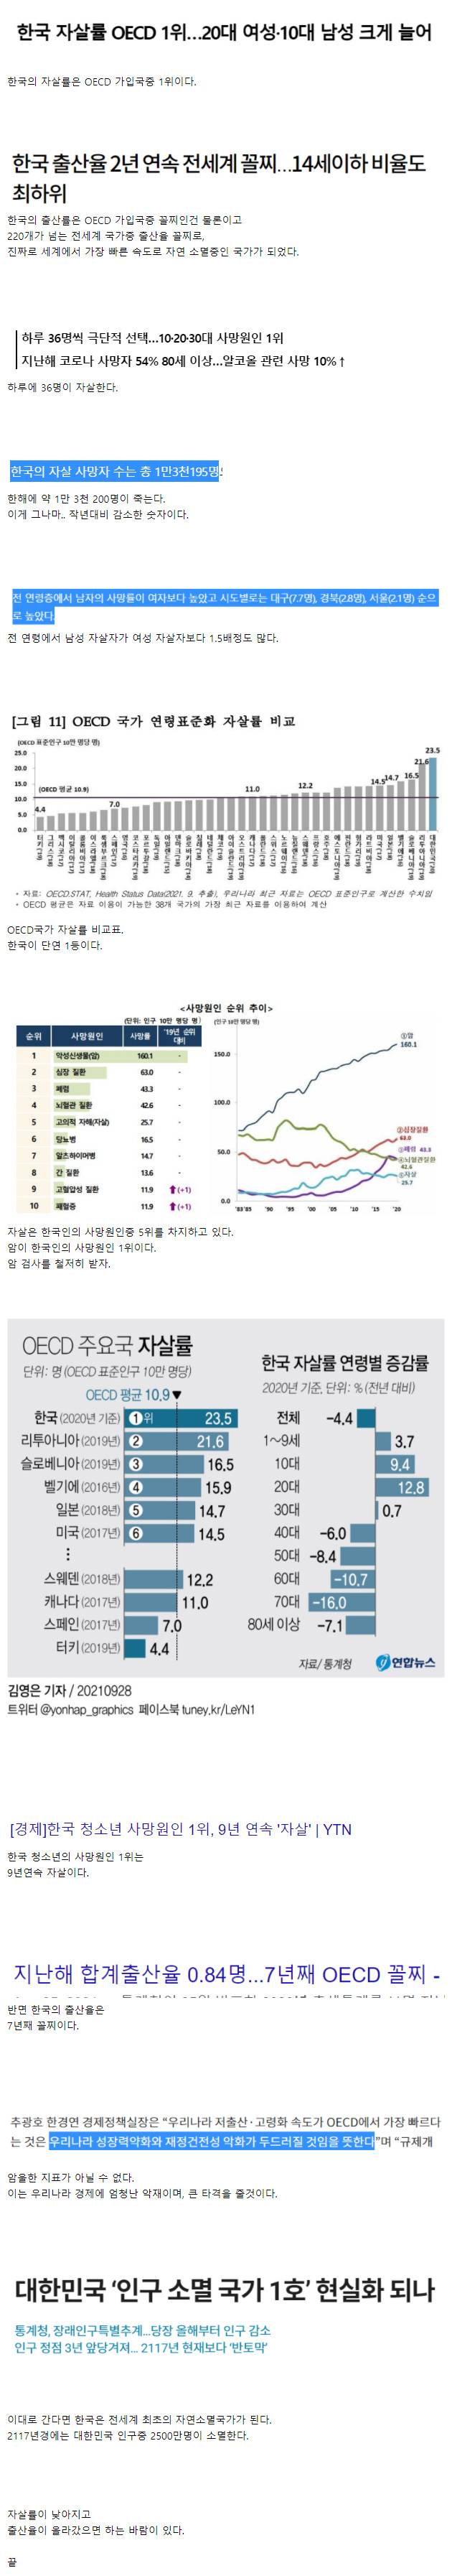 암울한 한국의 자살률과 출산율